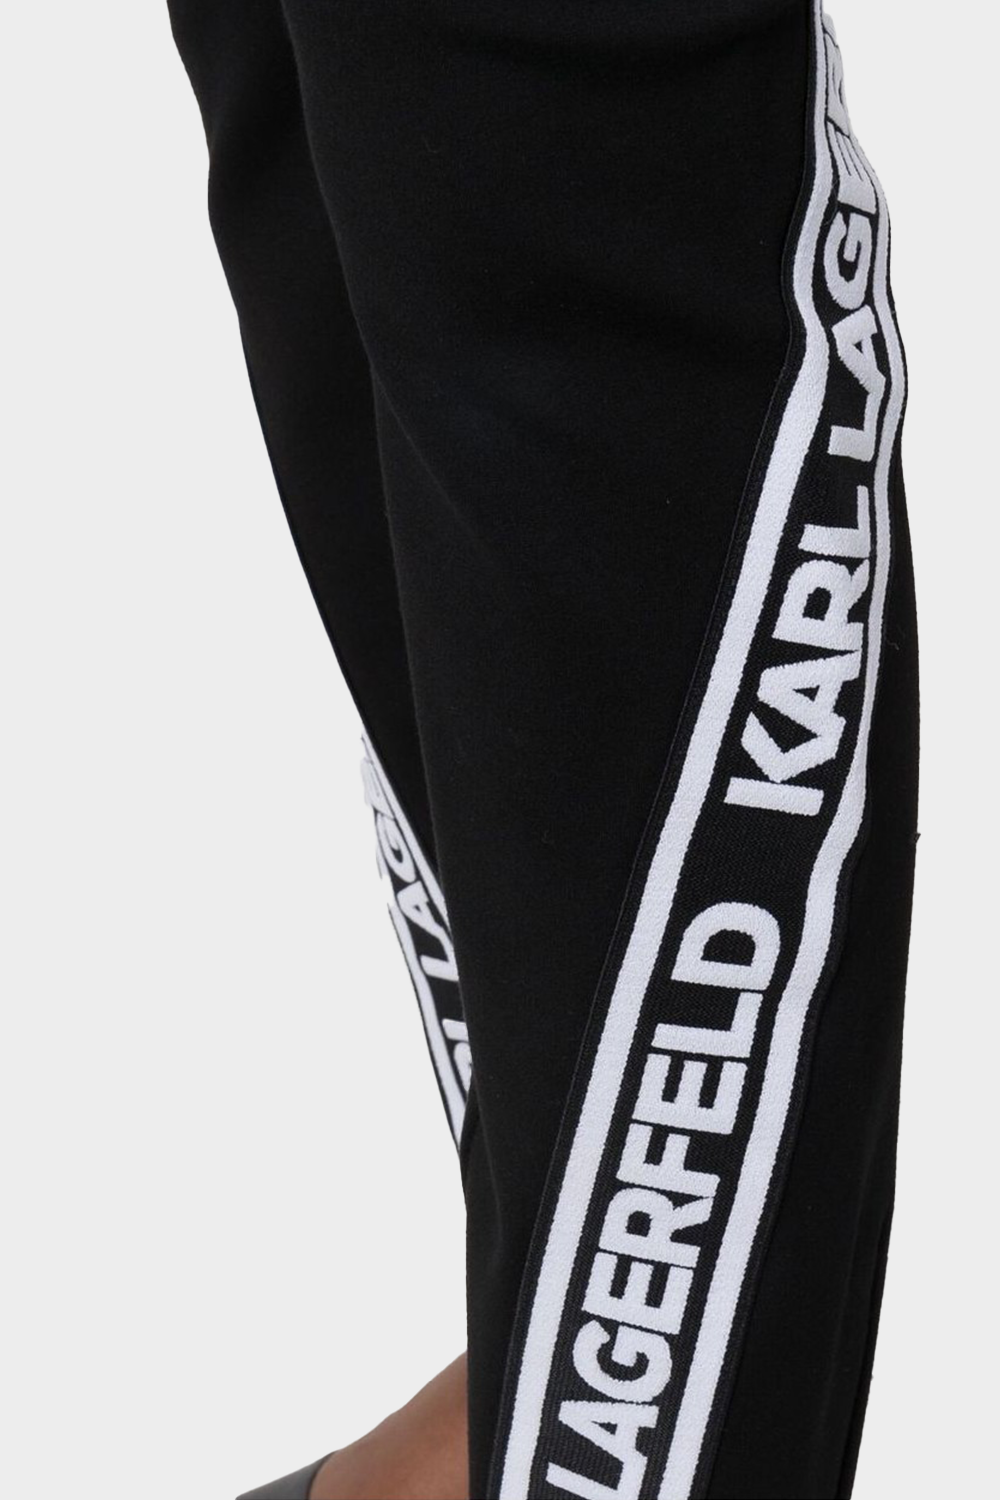 מכנסי טייץ לנשים בצבע שחור KARL LAGERFELD Vendome online | ונדום .